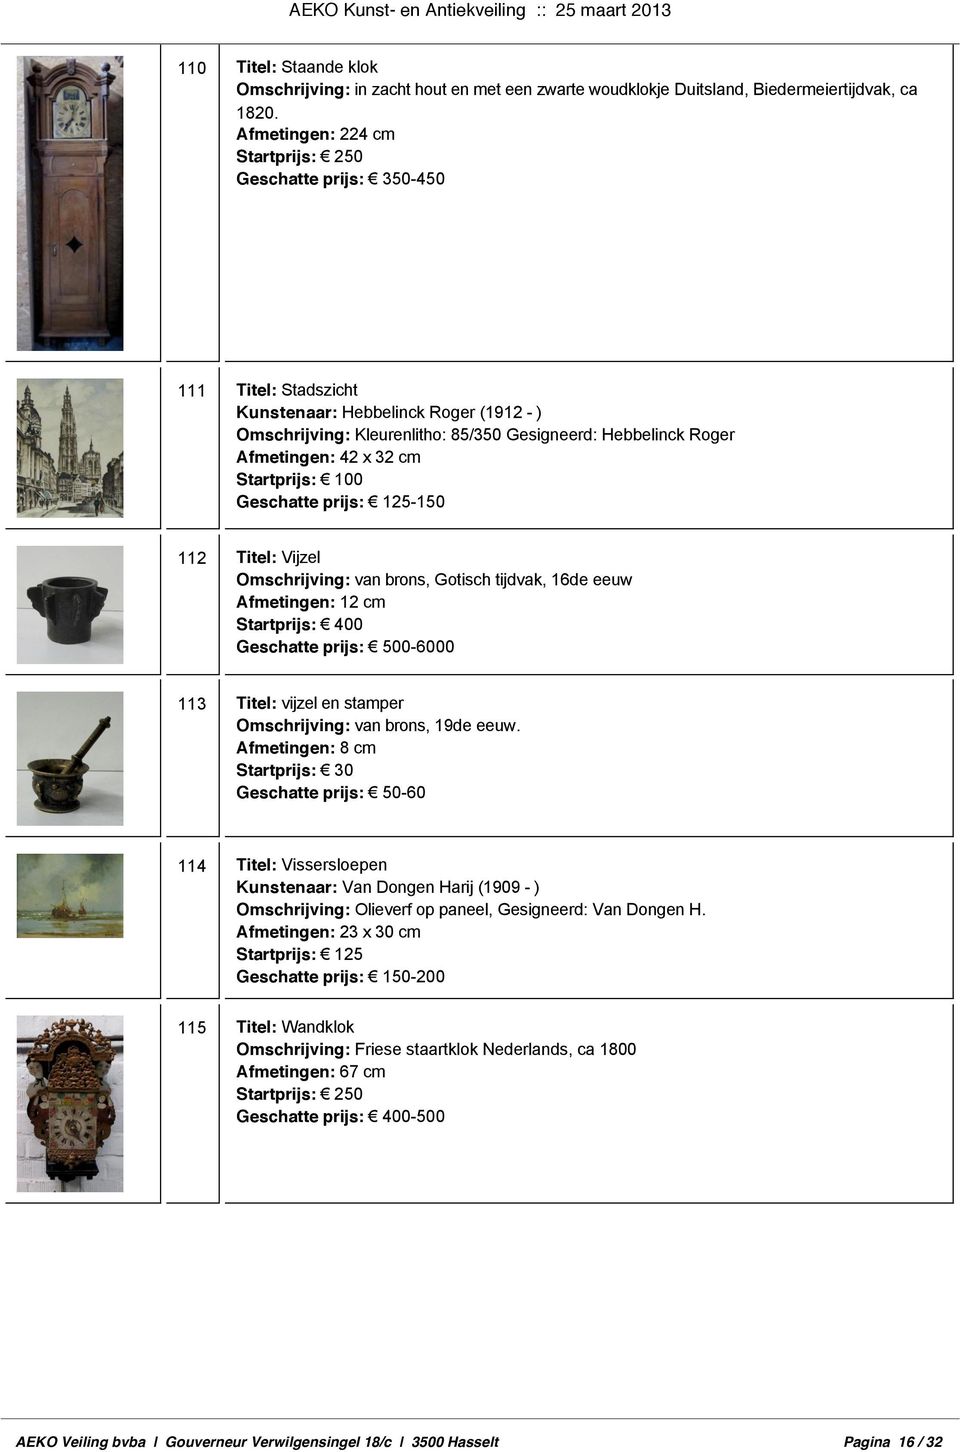 Titel: Vijzel Omschrijving: van brons, Gotisch tijdvak, 16de eeuw Afmetingen: 12 cm 0 113 Titel: vijzel en stamper Omschrijving: van brons, 19de eeuw.